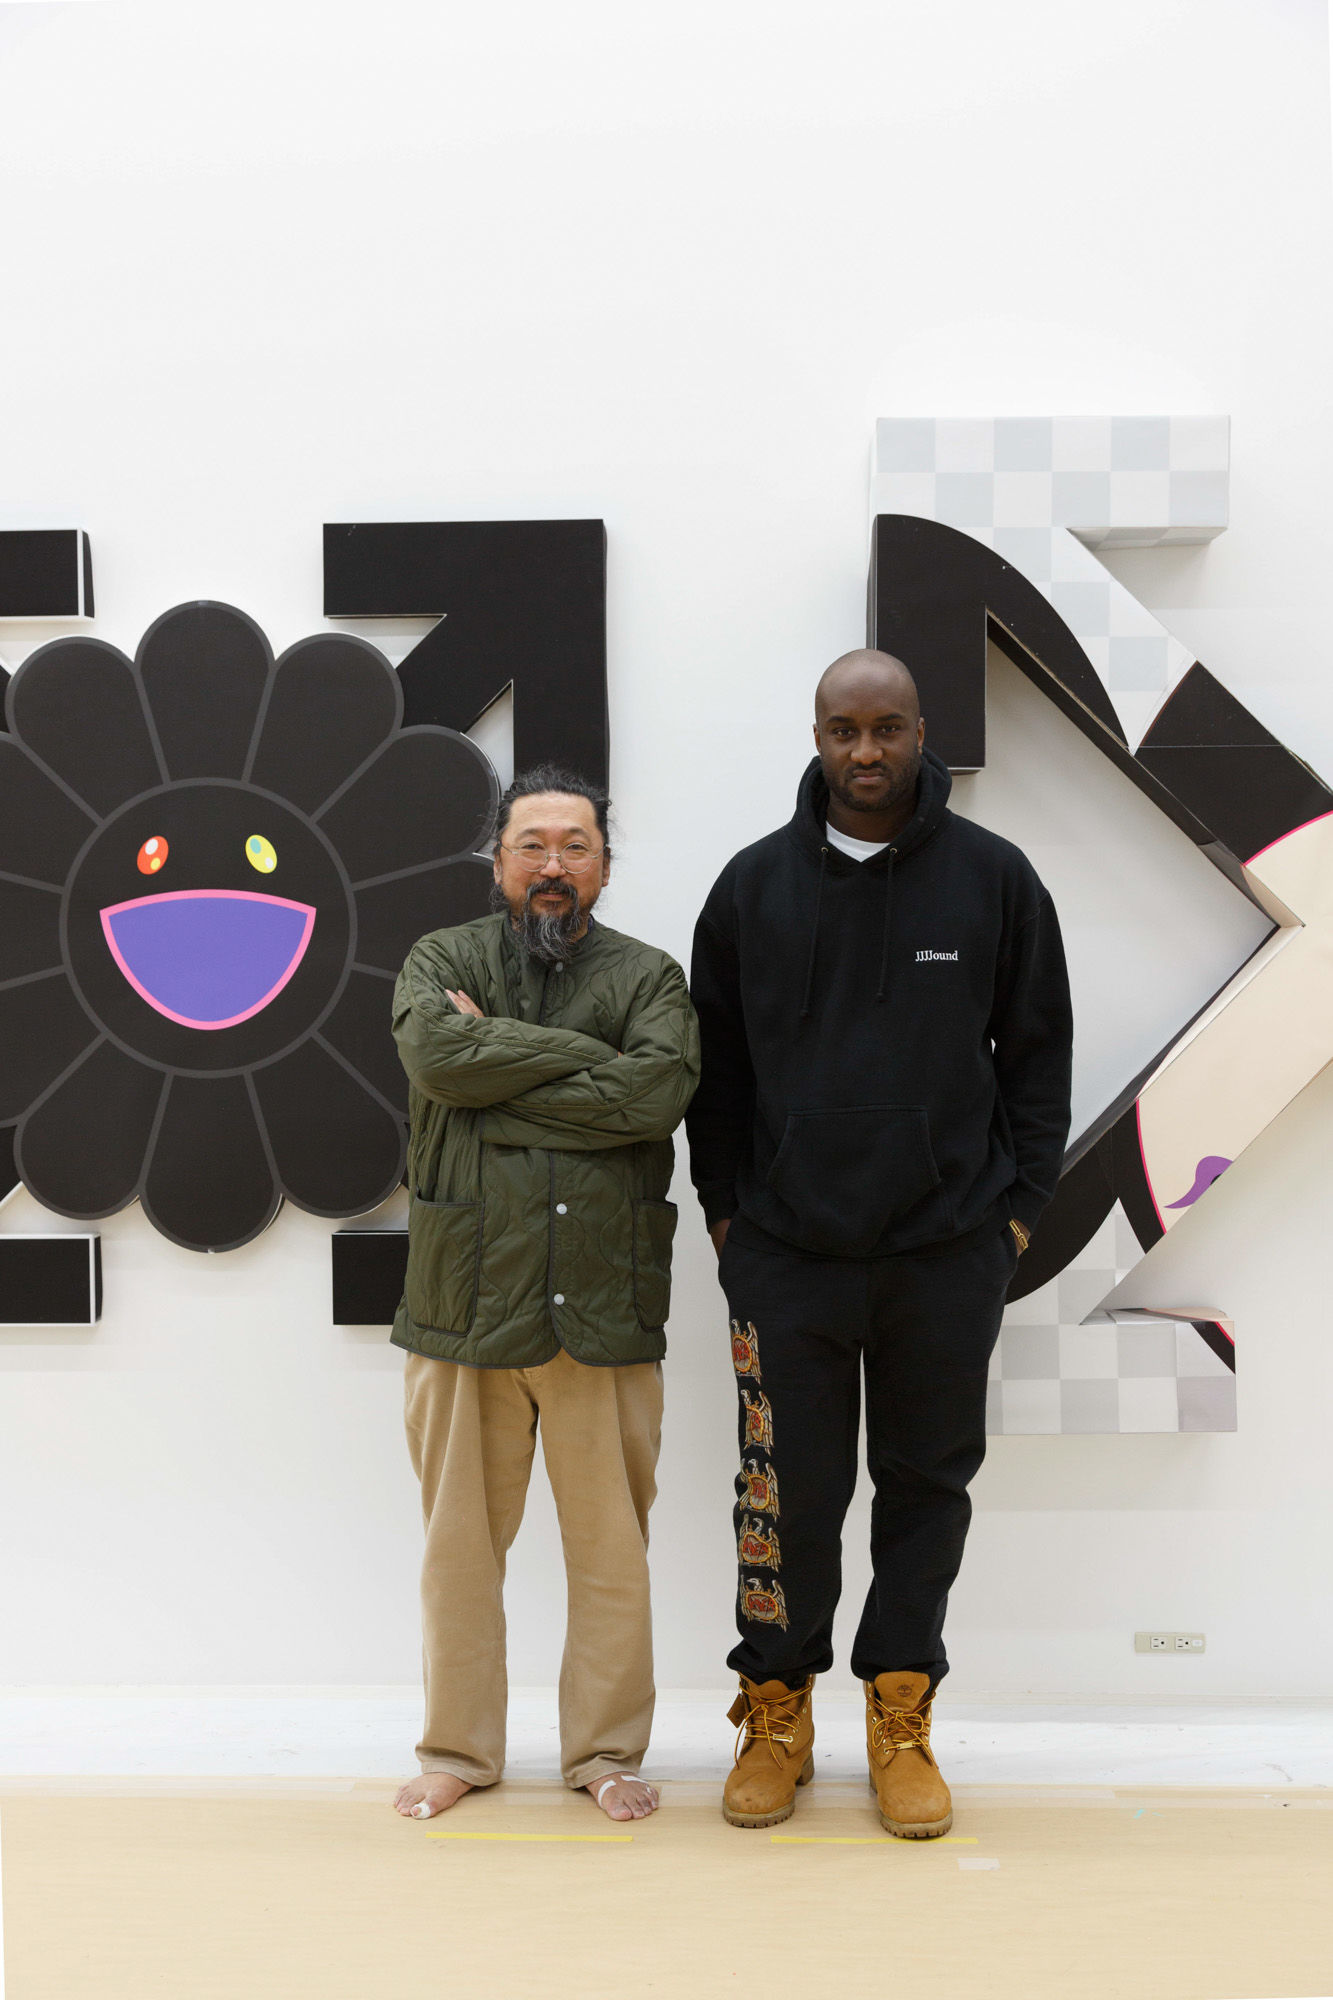 オフ-ホワイトのヴァージルと村上隆によるコラボアート展「Future 